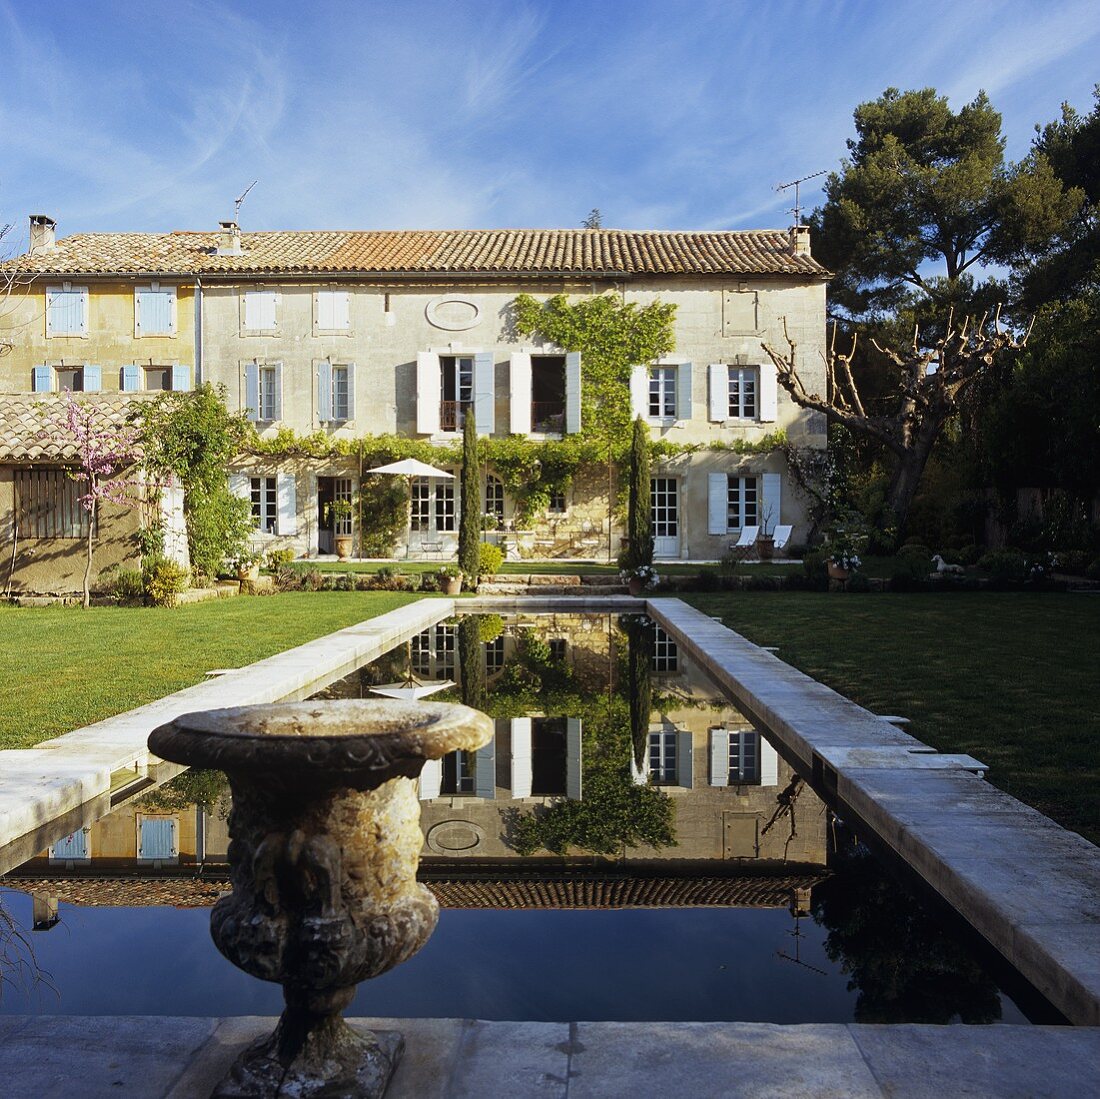 Haus in der Provence und antik griechisches Gefäss am Pool im Garten